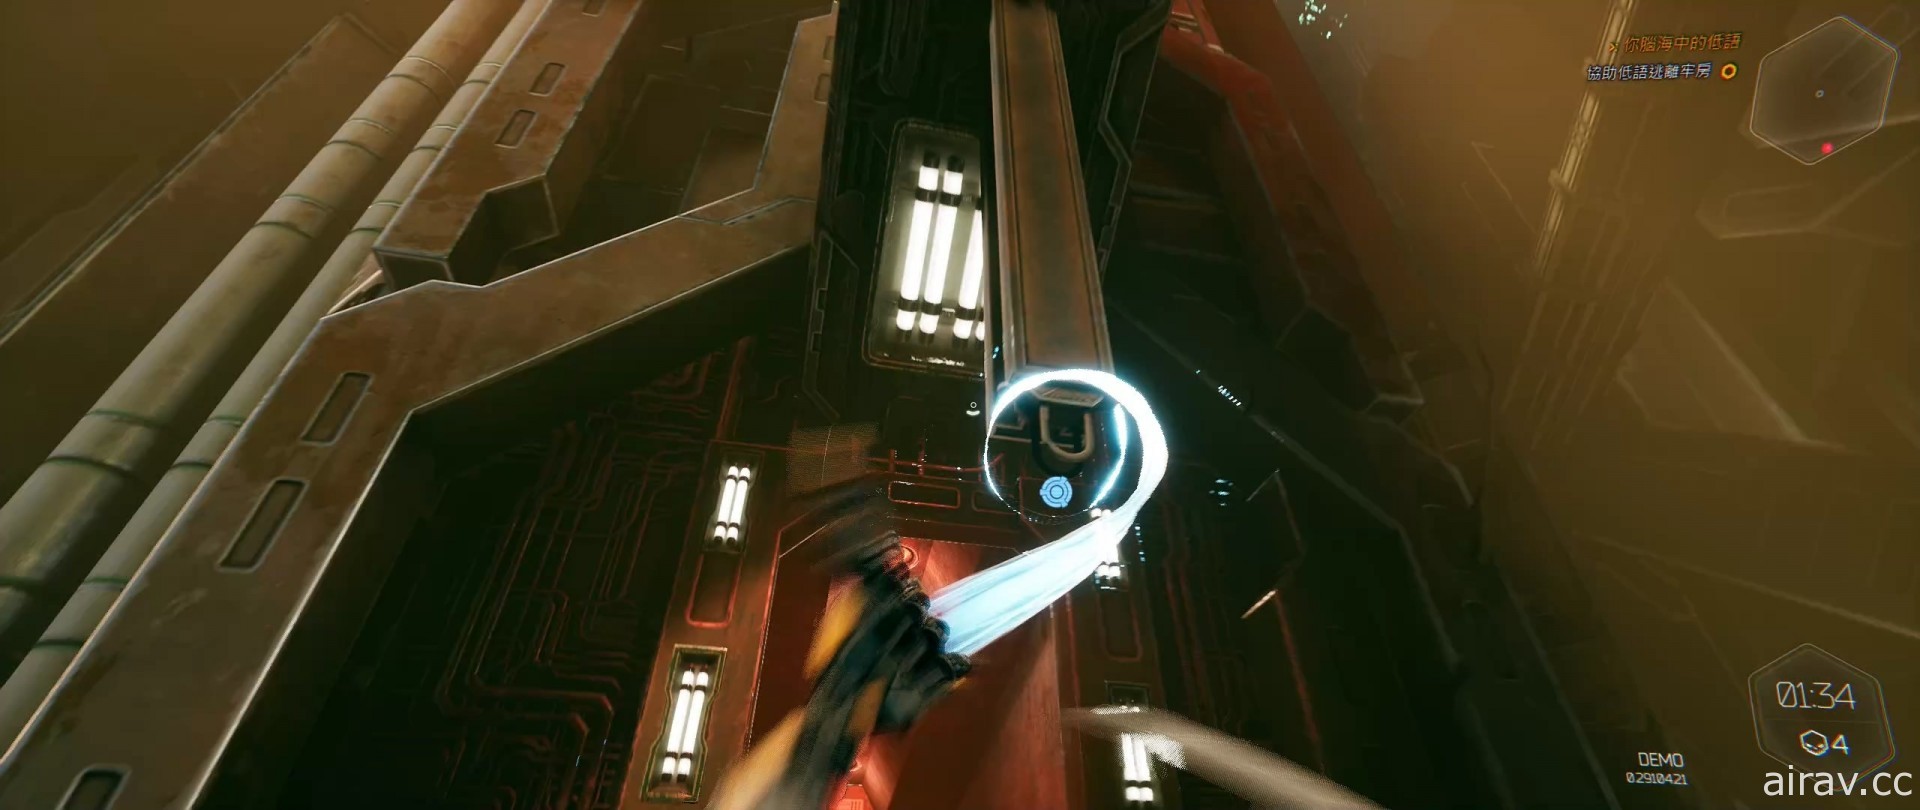 【試玩】賽博龐克動作遊戲《幽影行者》搶先體驗 化身帥氣機械忍者穿梭大樓間